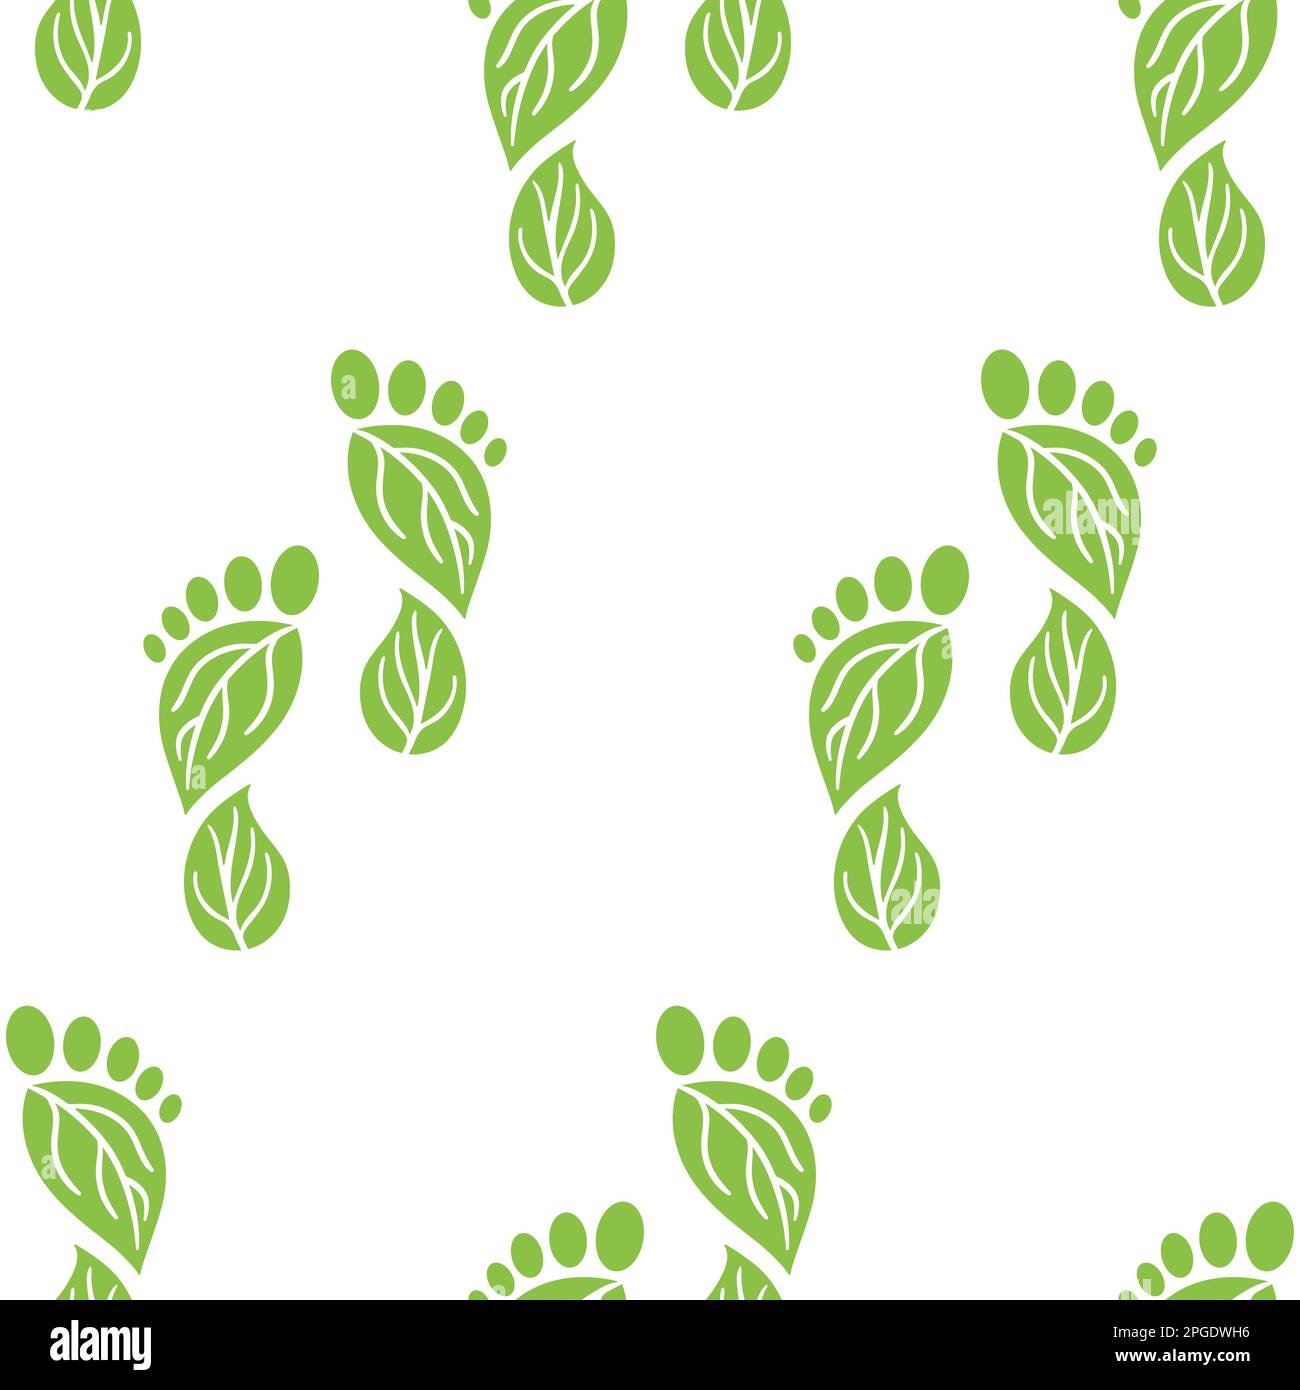 Schema senza cuciture delle icone delle emissioni di anidride carbonica. CO2 simboli di impronta ecologica con foglie verdi. Emissione di gas a effetto serra. Ambiente e clima cha Illustrazione Vettoriale